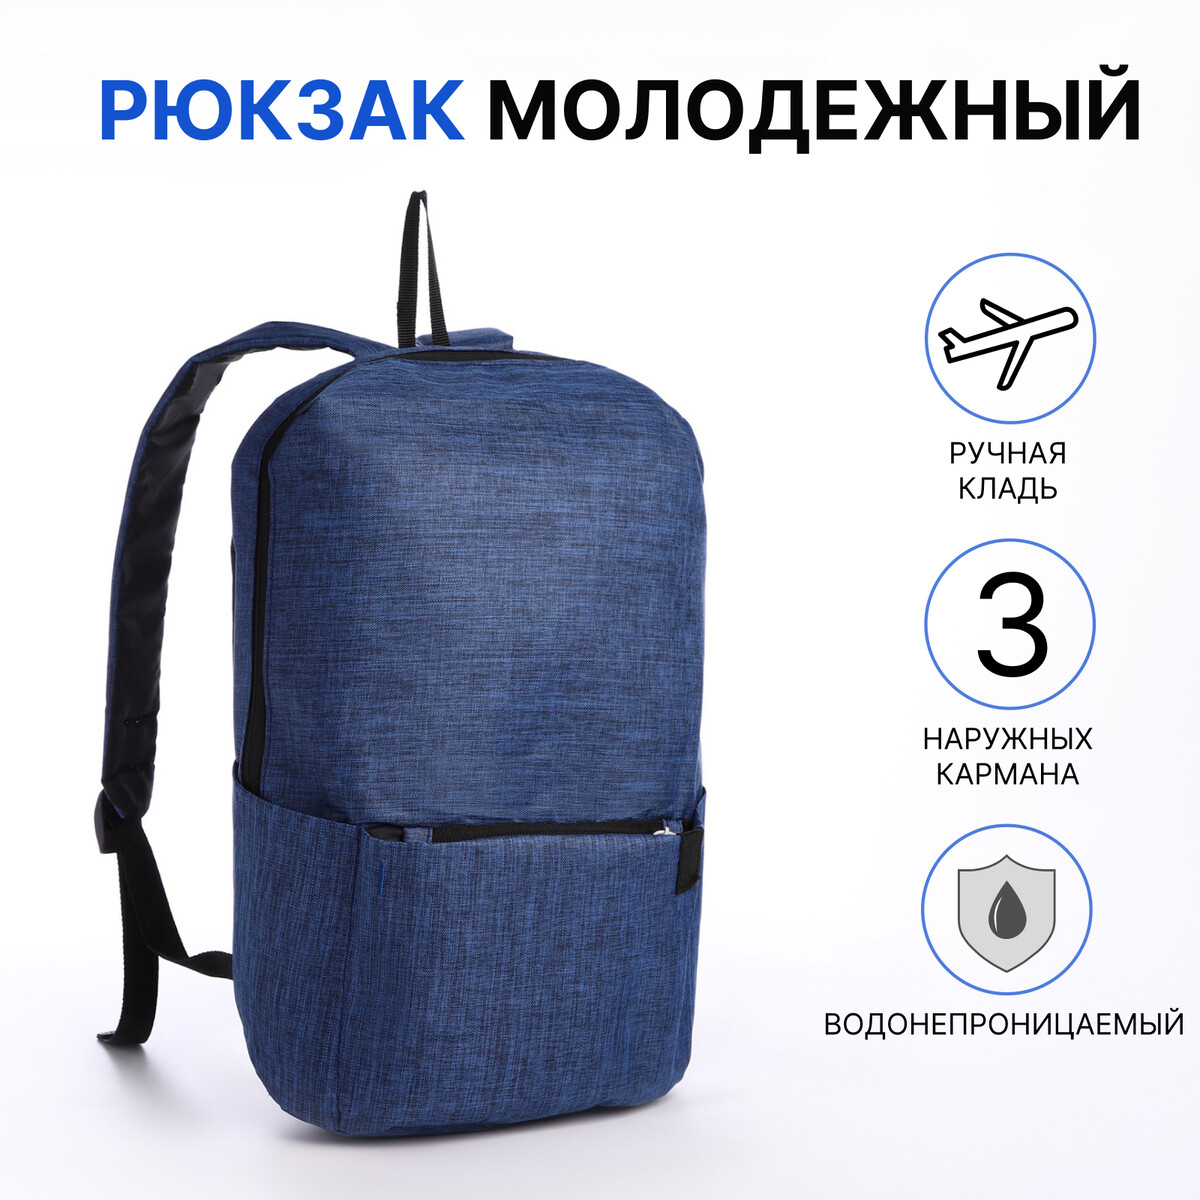 Рюкзак молодежный из текстиля на молнии, водонепроницаемый, наружный карман, цвет синий рюкзак молодежный из текстиля на молнии водонепроницаемый наружный карман зеленый